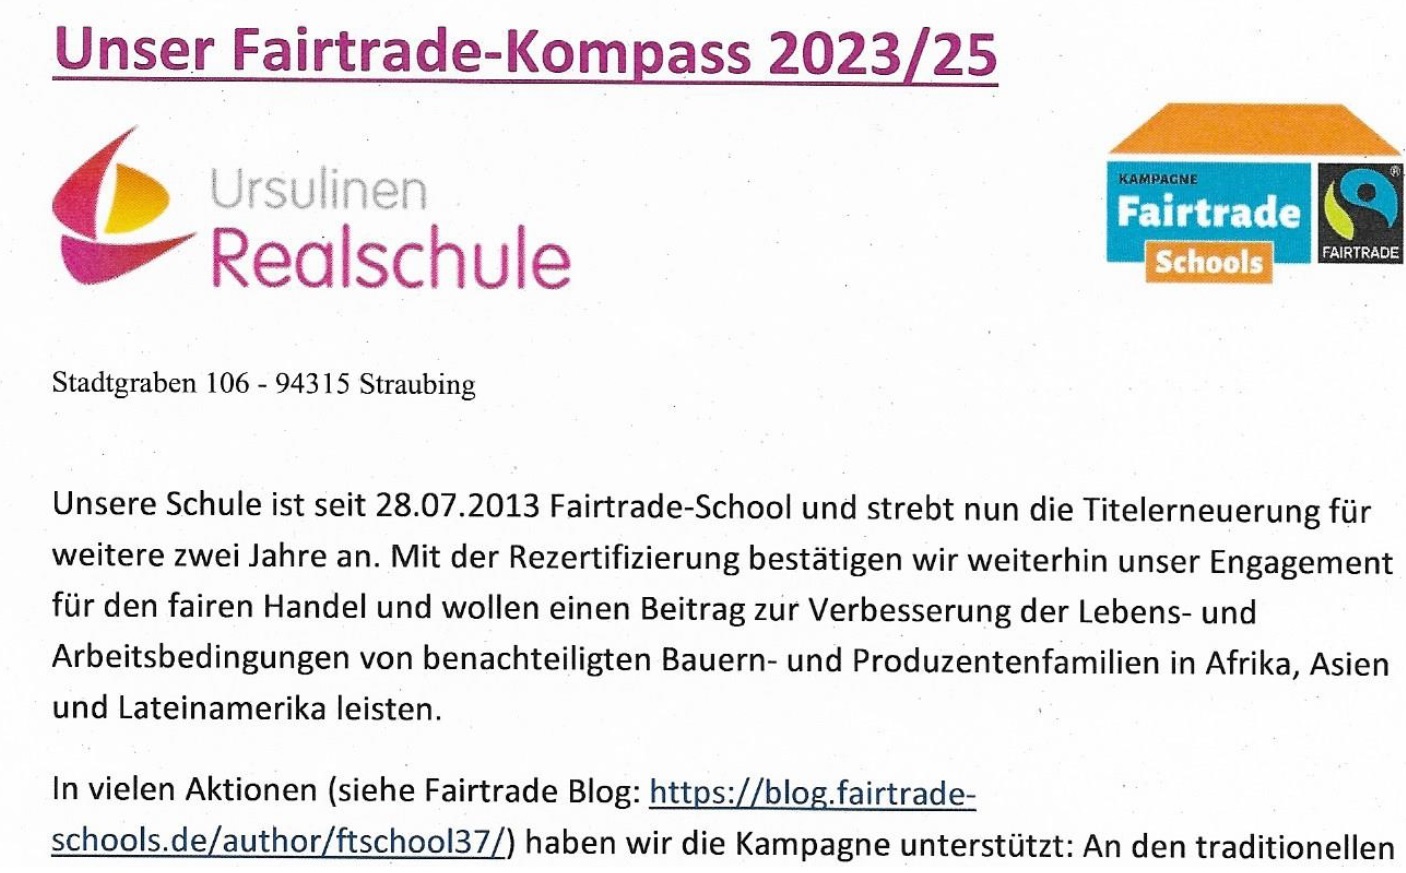 Fairtrade Kompass 2023 25